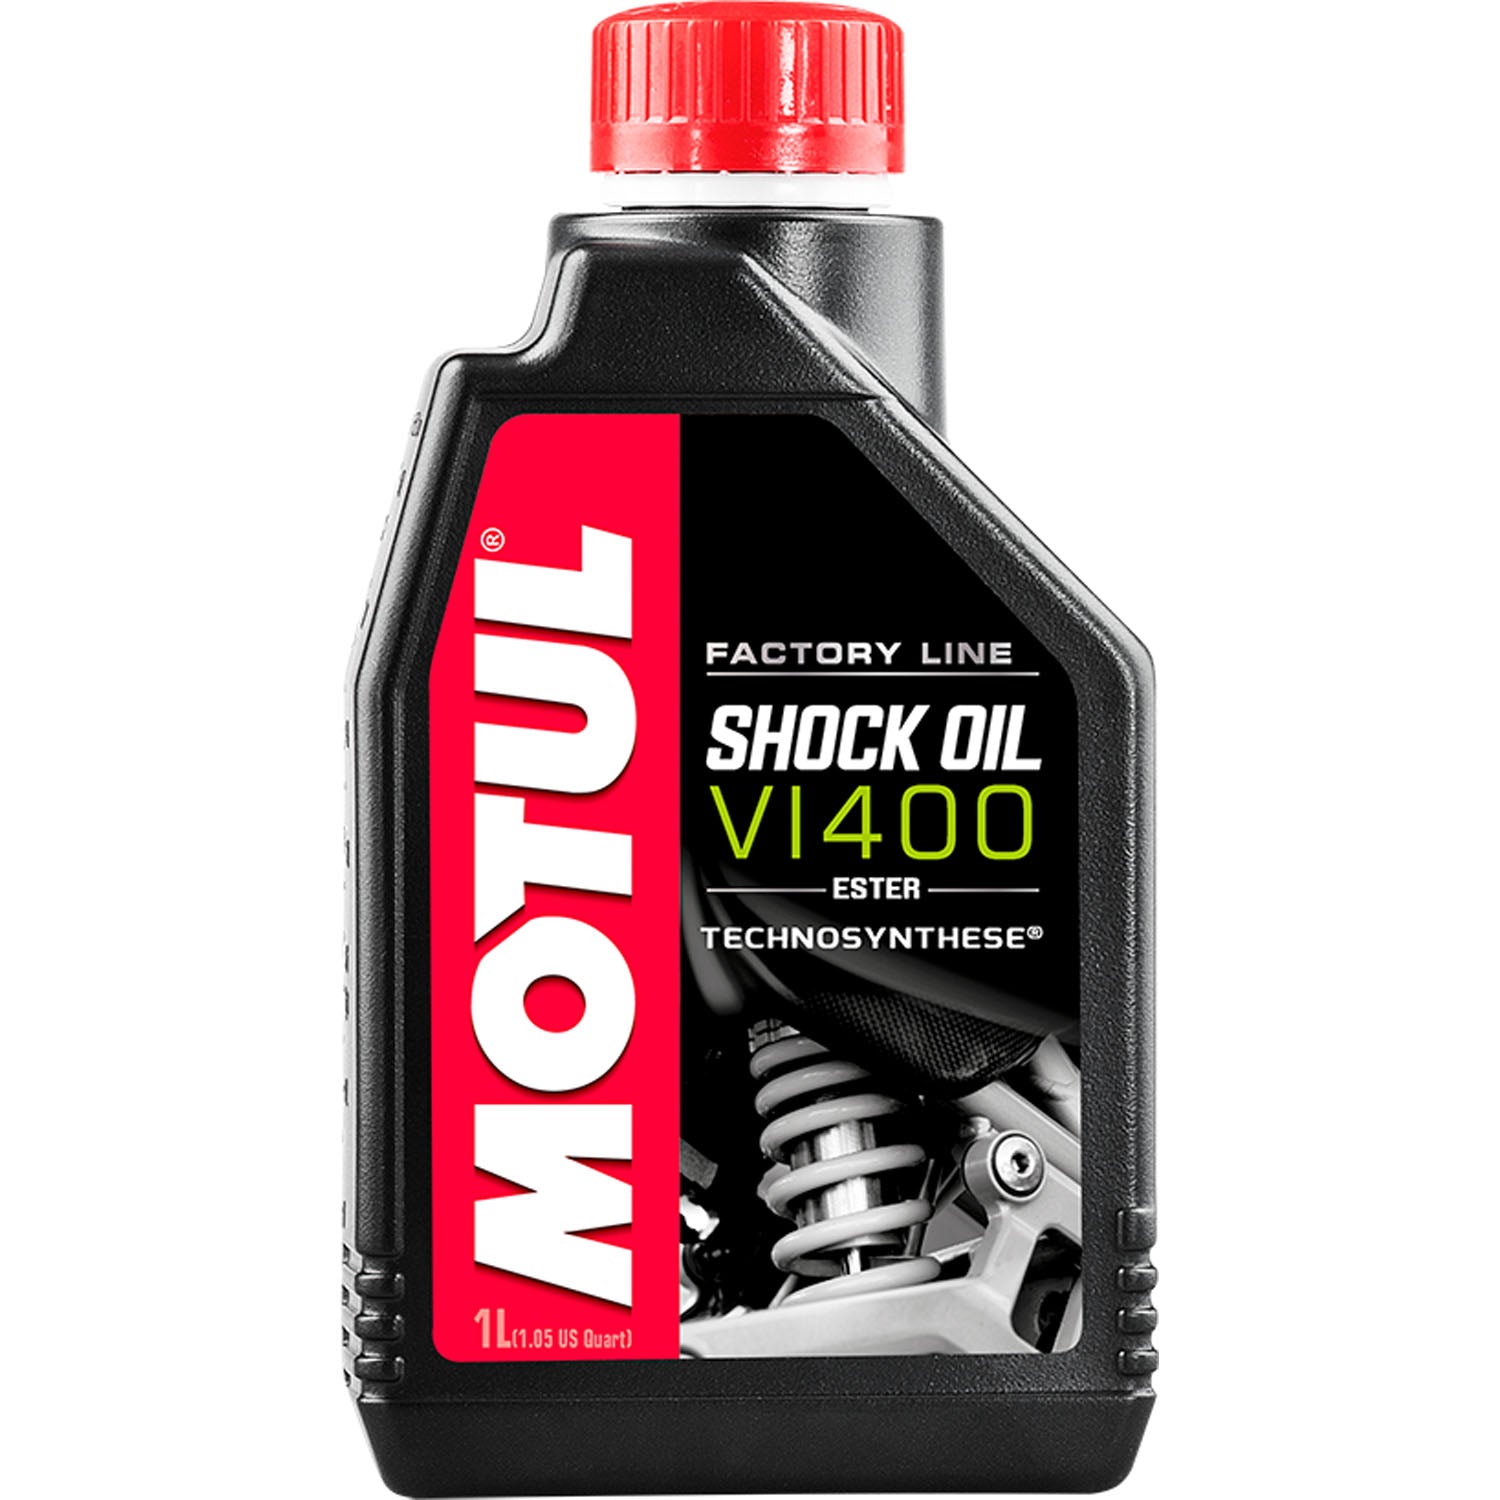 Motul Factory Line Shock Oil VI400 - 1 Liter